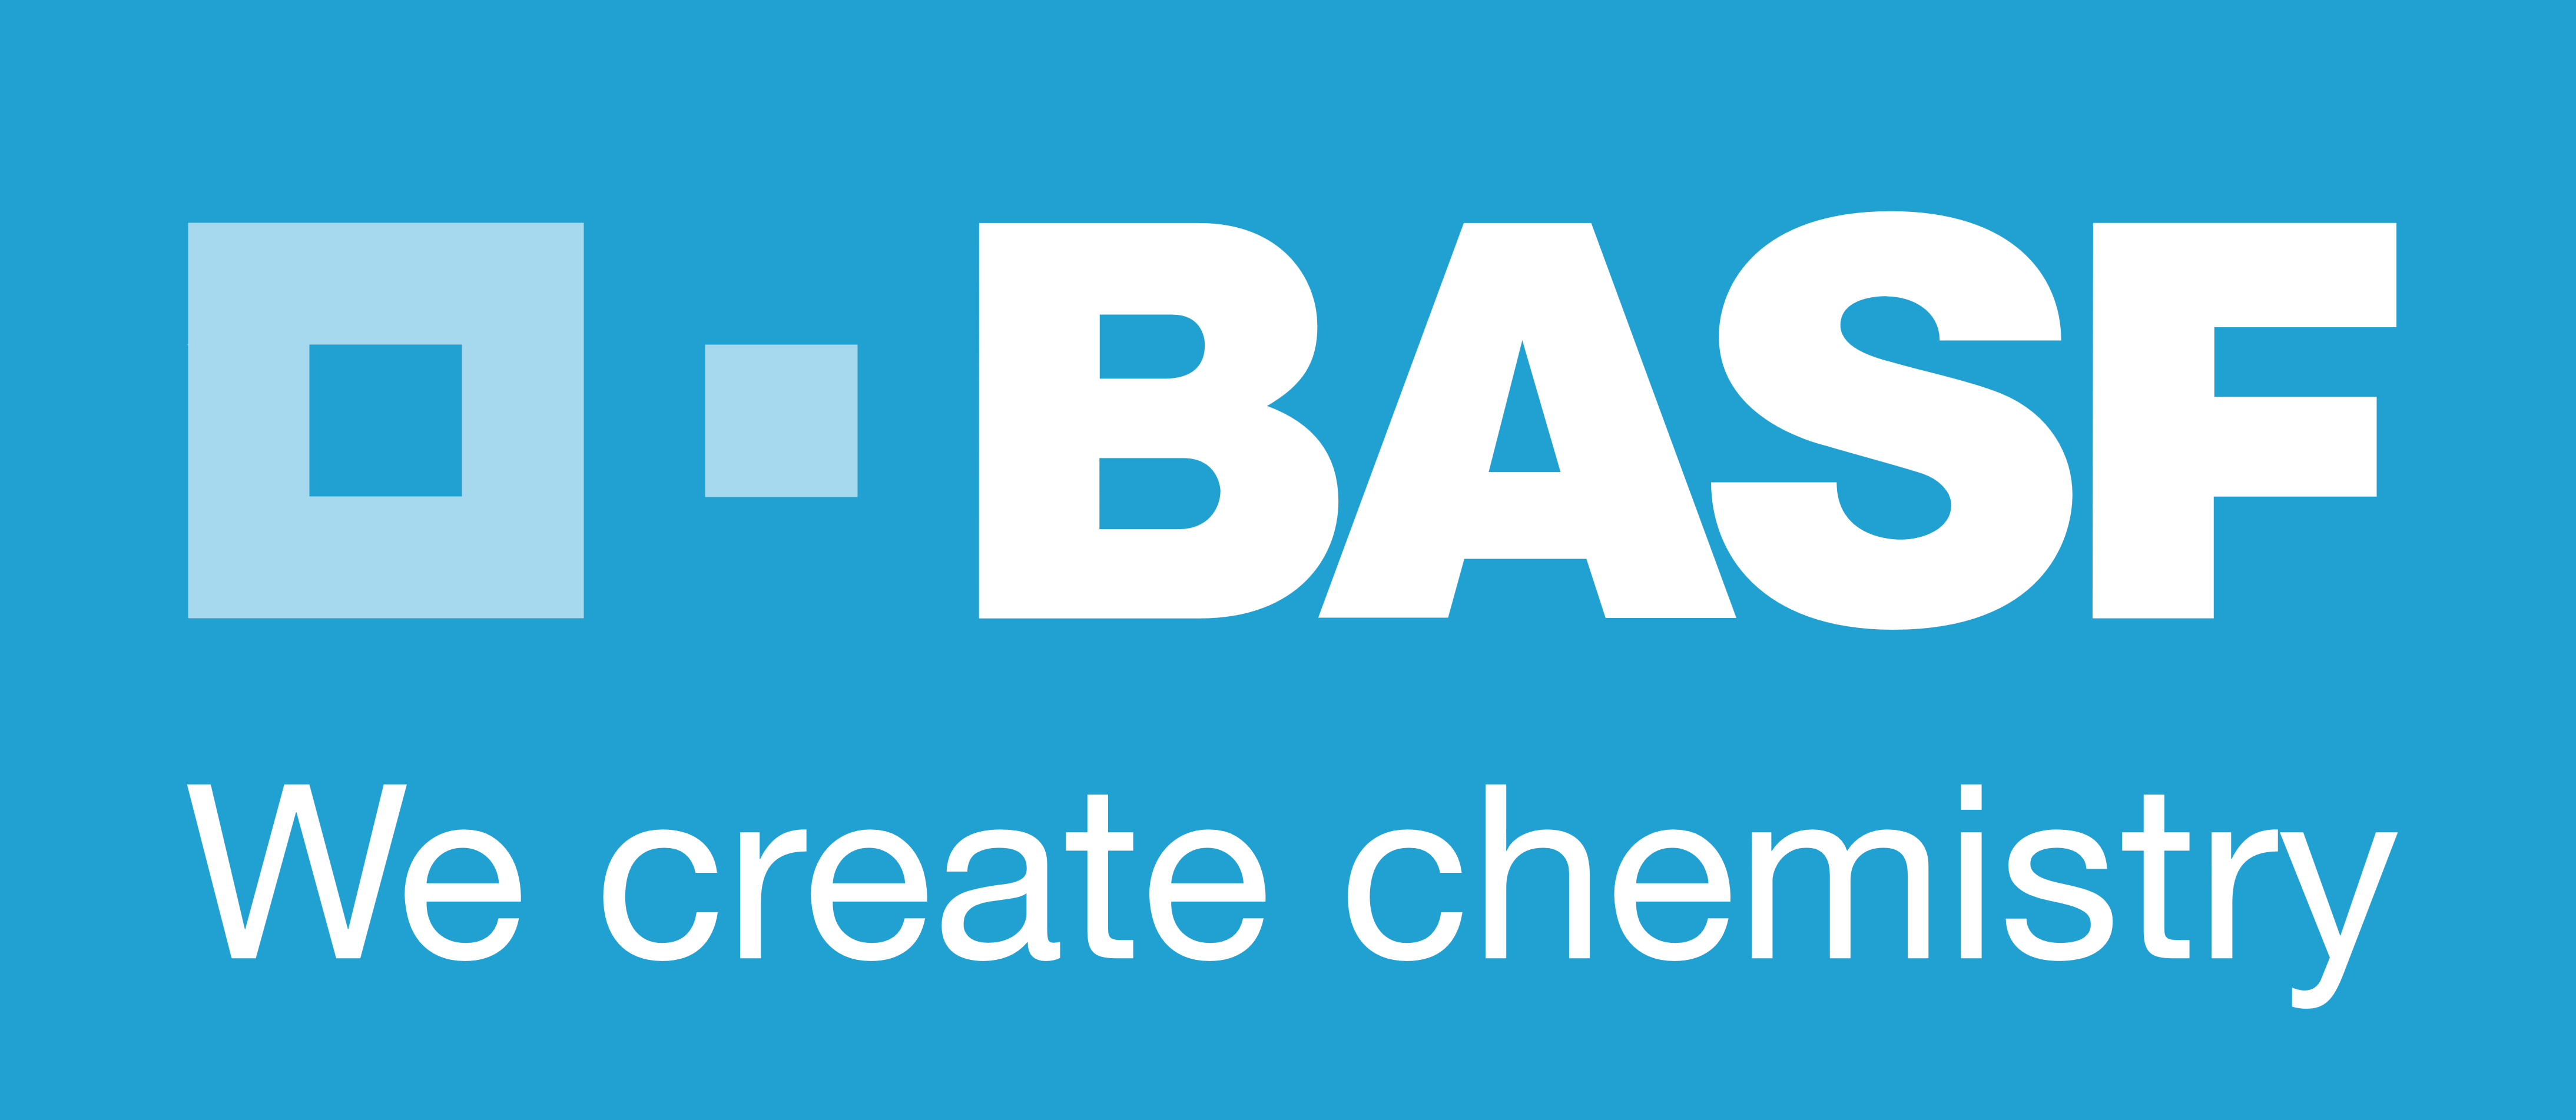 BASF Logo Wallpaper